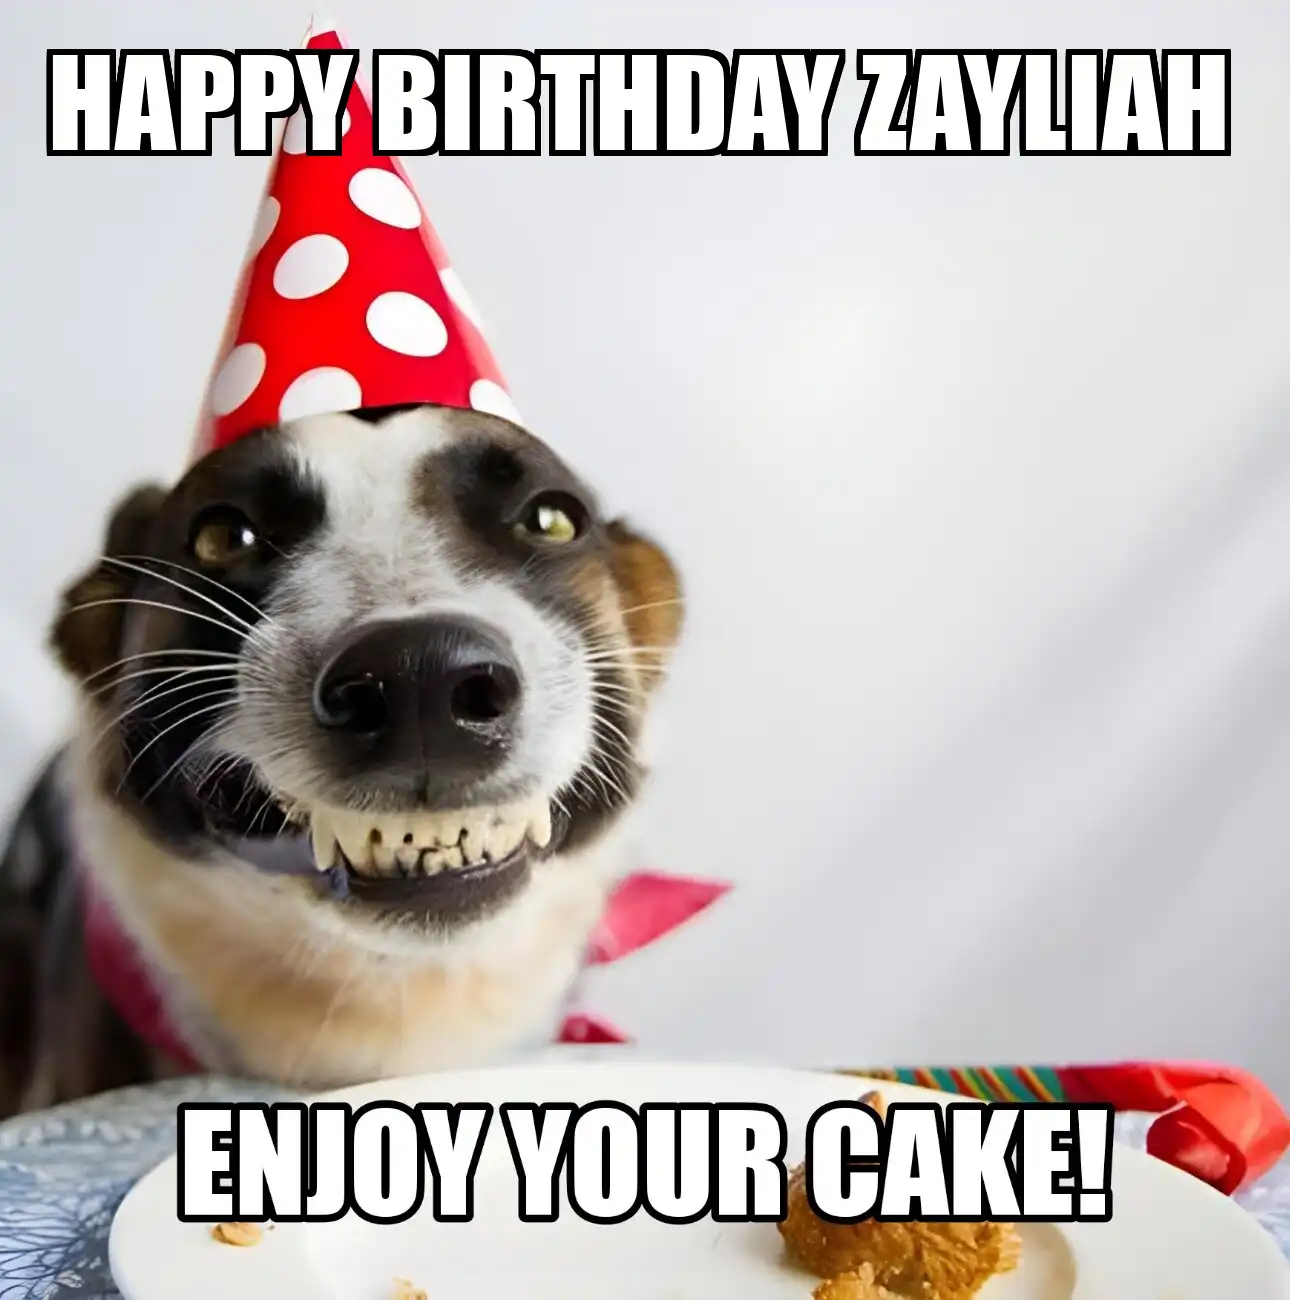 Happy Birthday Zayliah Enjoy Your Cake Dog Meme